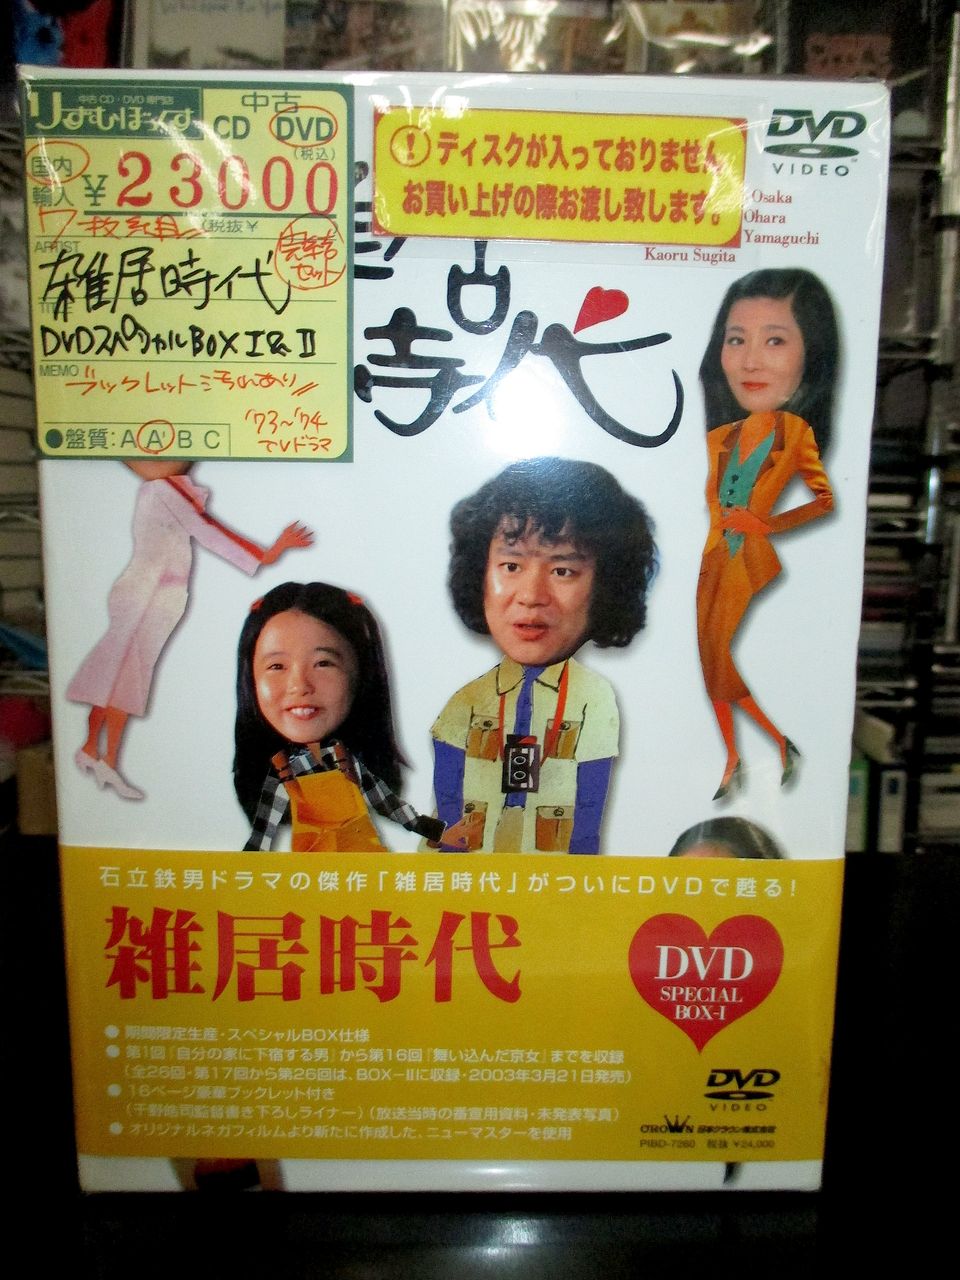 中古CD・レコード・DVDの店 りずむぼっくす神戸元町店●7/29(水)DVD新入荷商品コメント